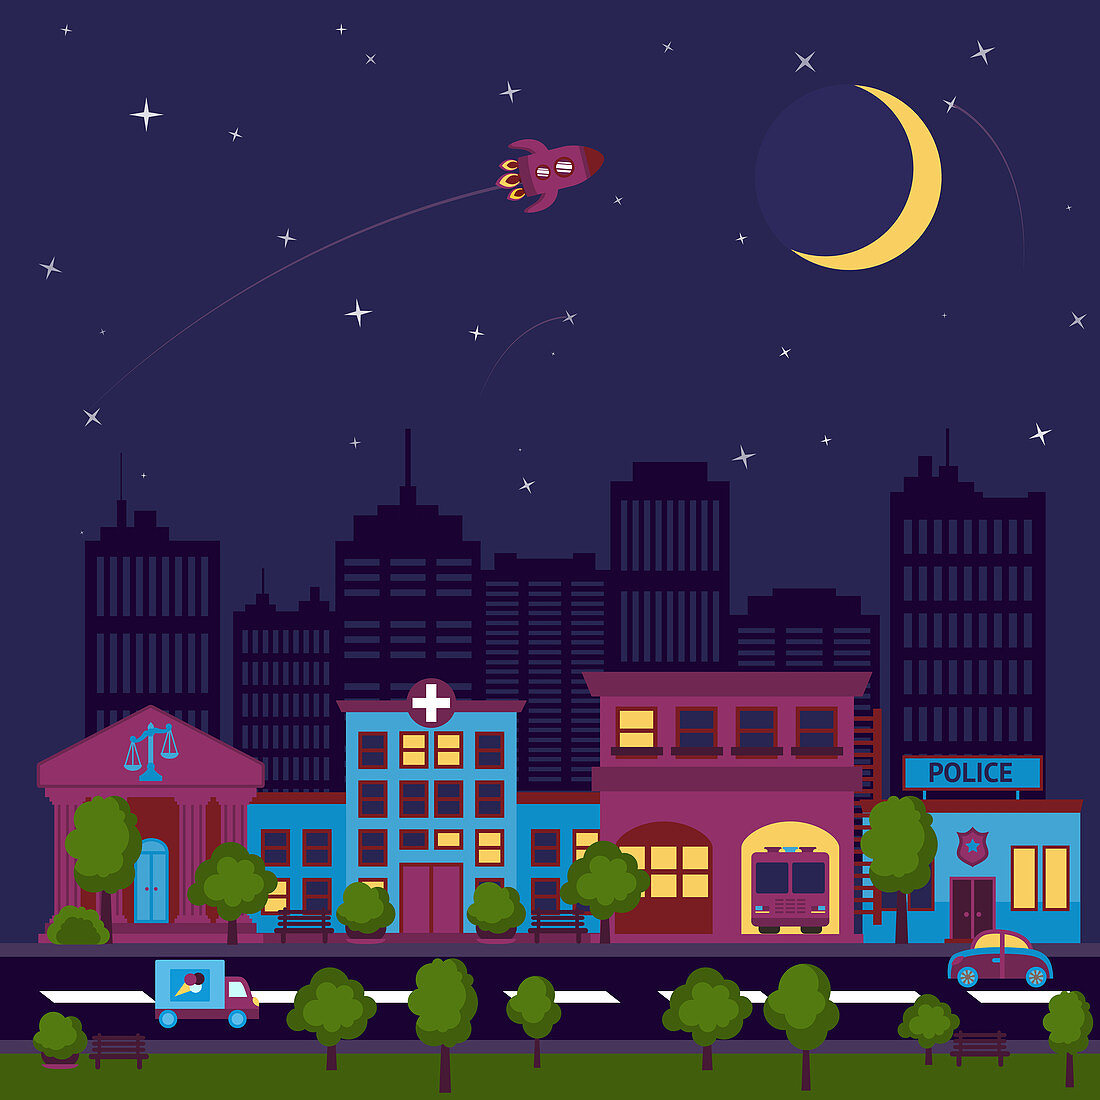 City street at night, illustration